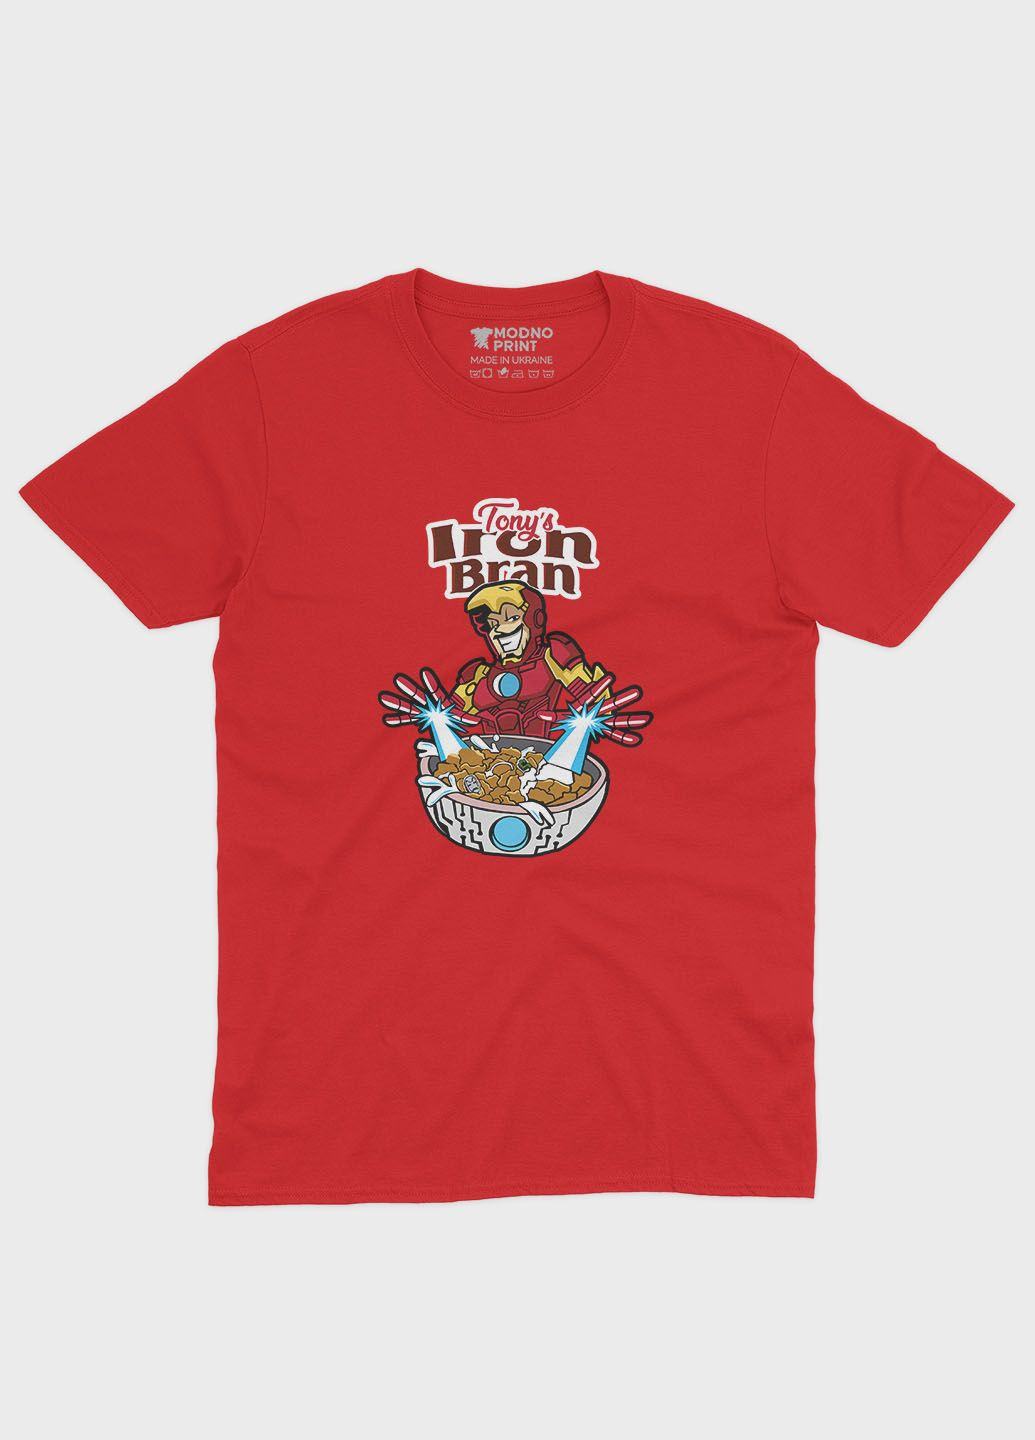 Червона демісезонна футболка для хлопчика з принтом супергероя - залізна людина (ts001-1-sre-006-016-013-b) Modno